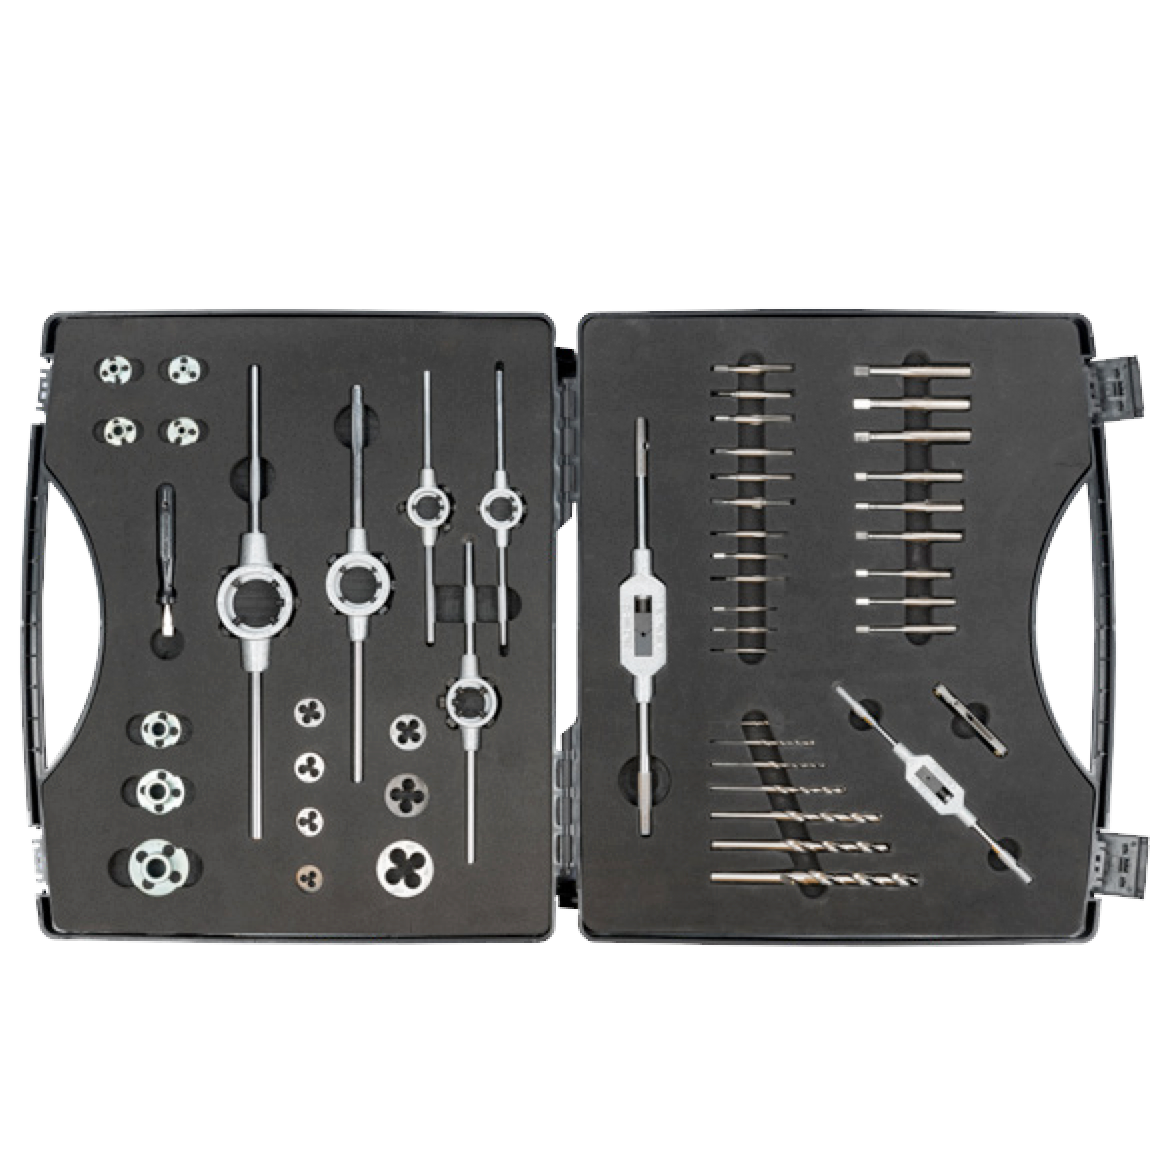 ELORA 1363-SF Thread Cutter Set Assortment (ELORA Tools) - Premium Thread Cutter Set from ELORA - Shop now at Yew Aik.